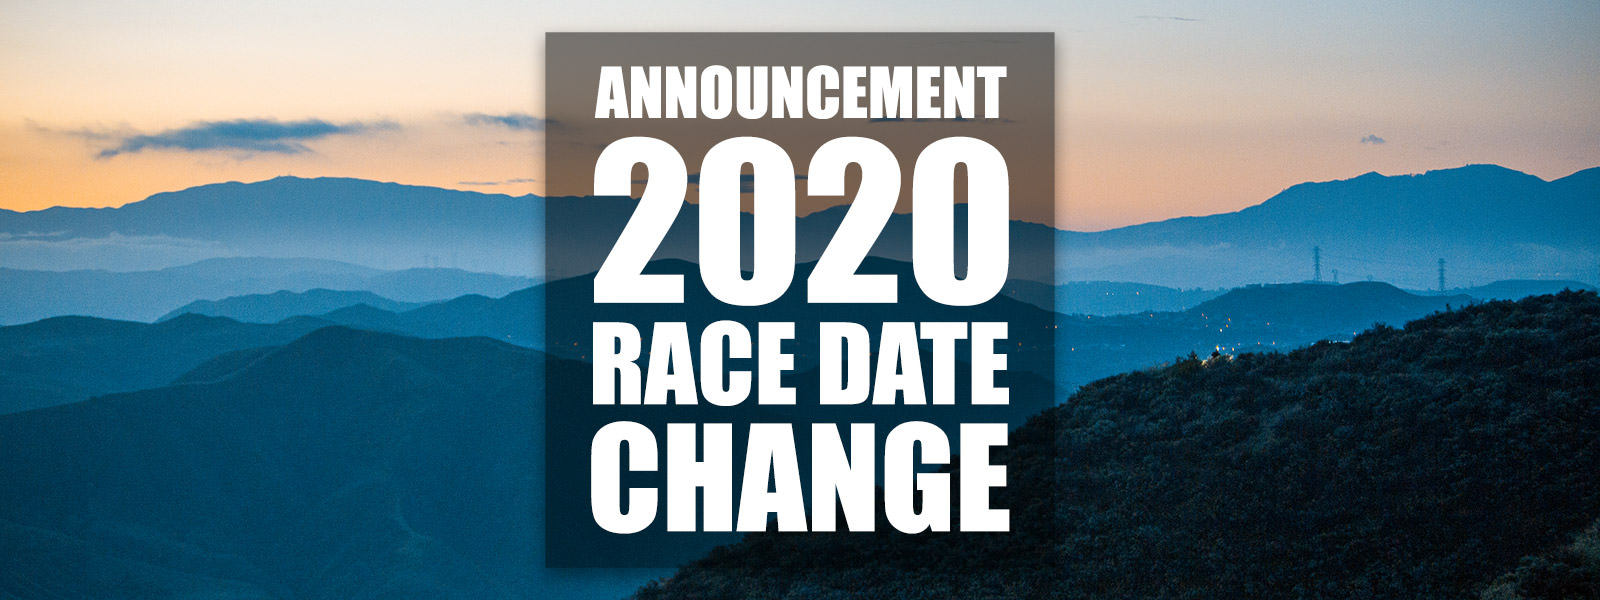 2020 RACE DATE CHANGE